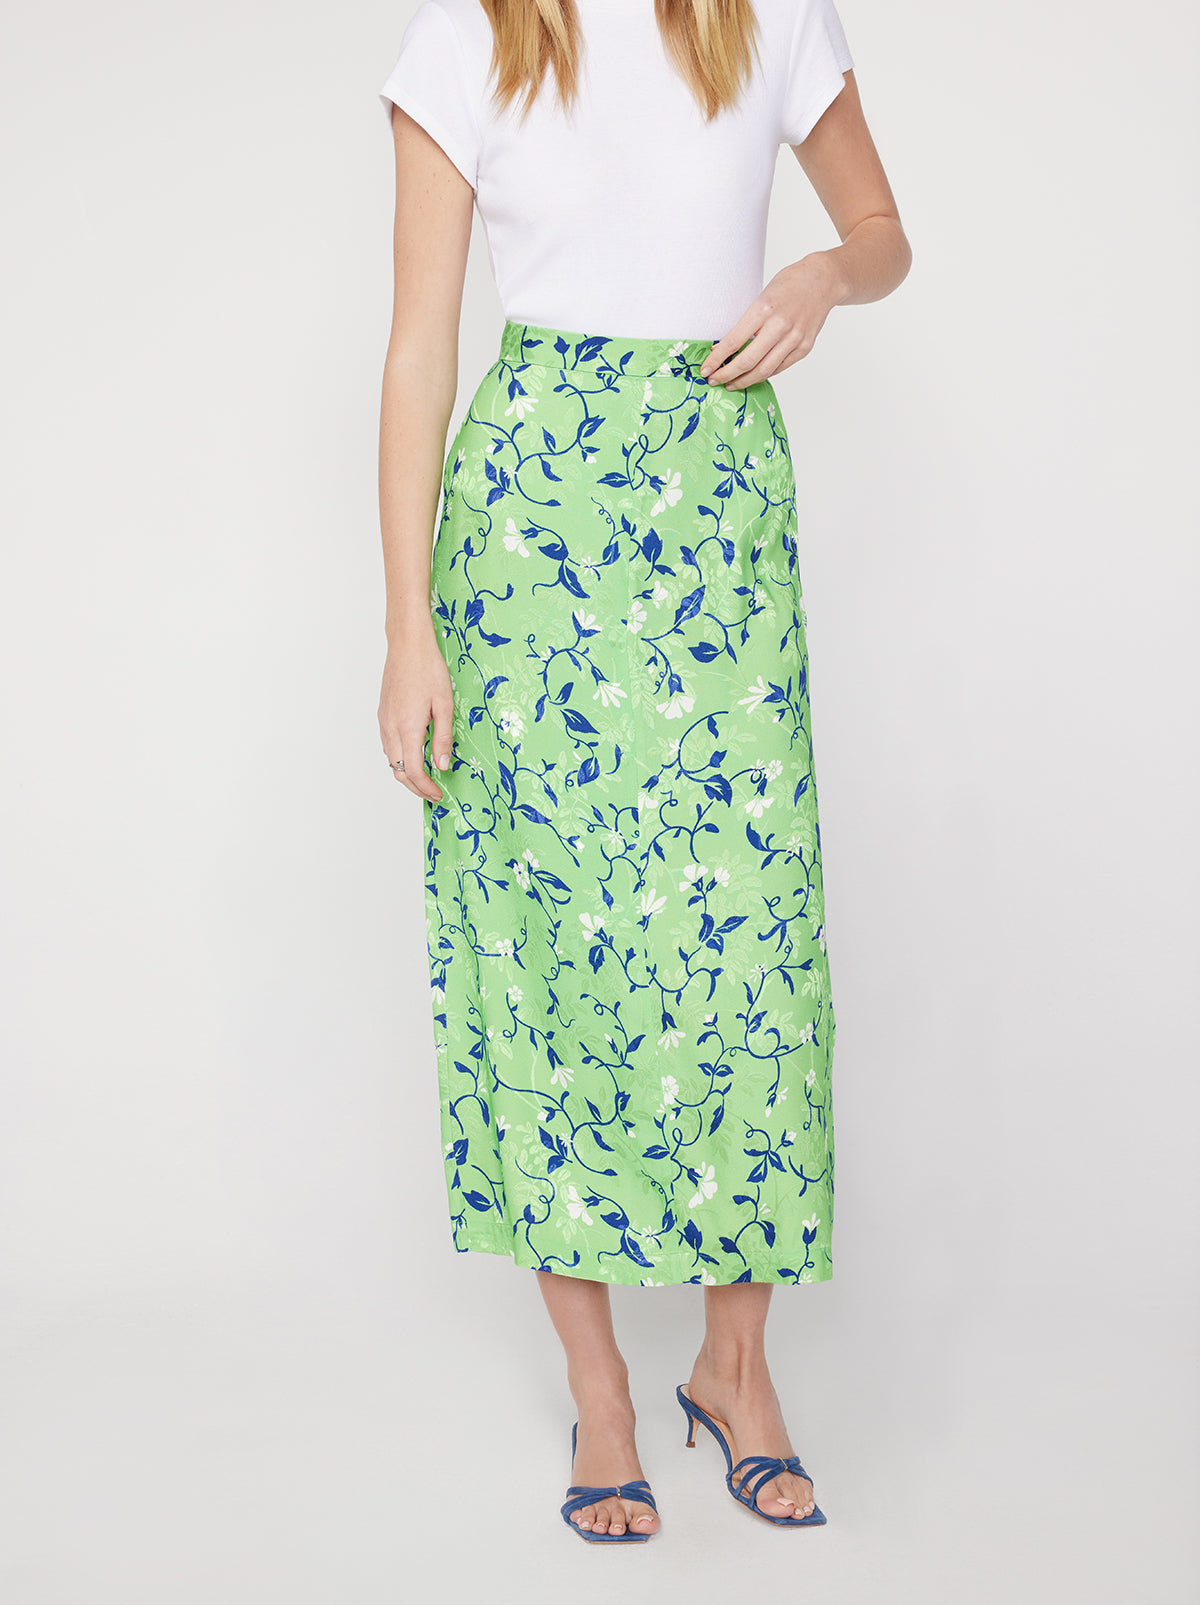 Laurel Green Vine Print Skirt By KITRI Studio